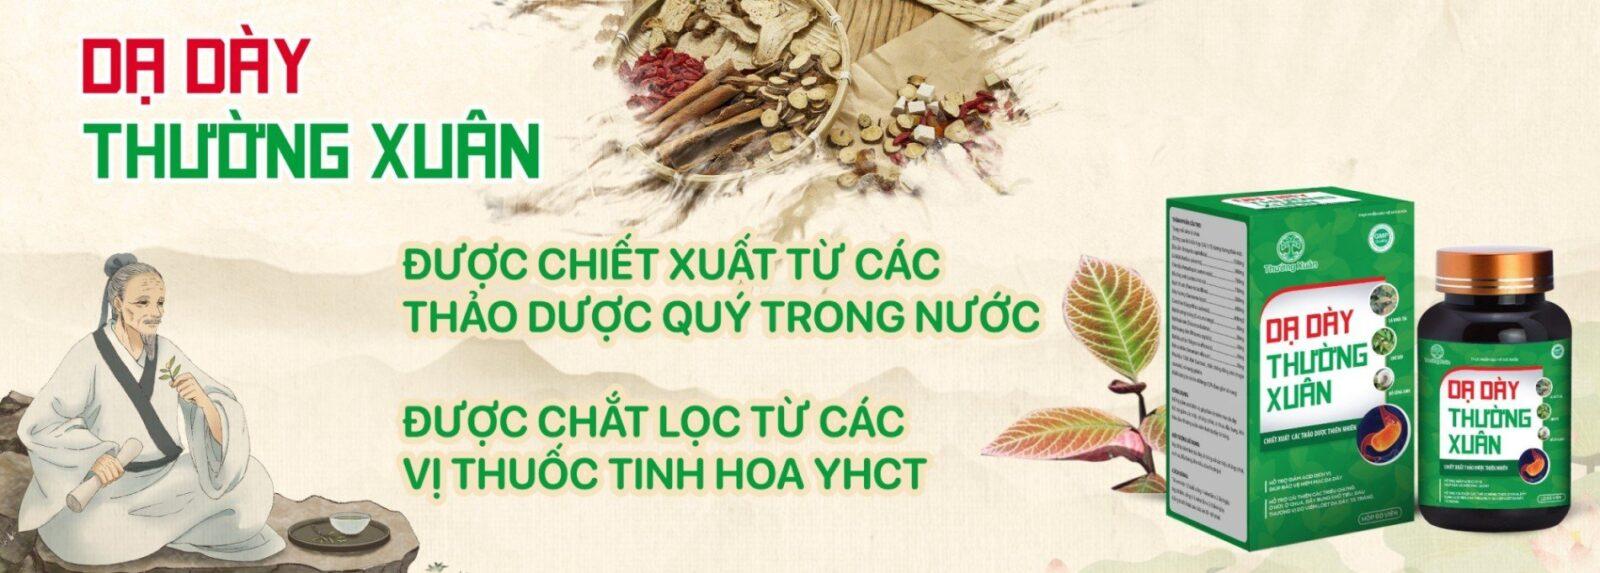 Thuong Xuan banner_3